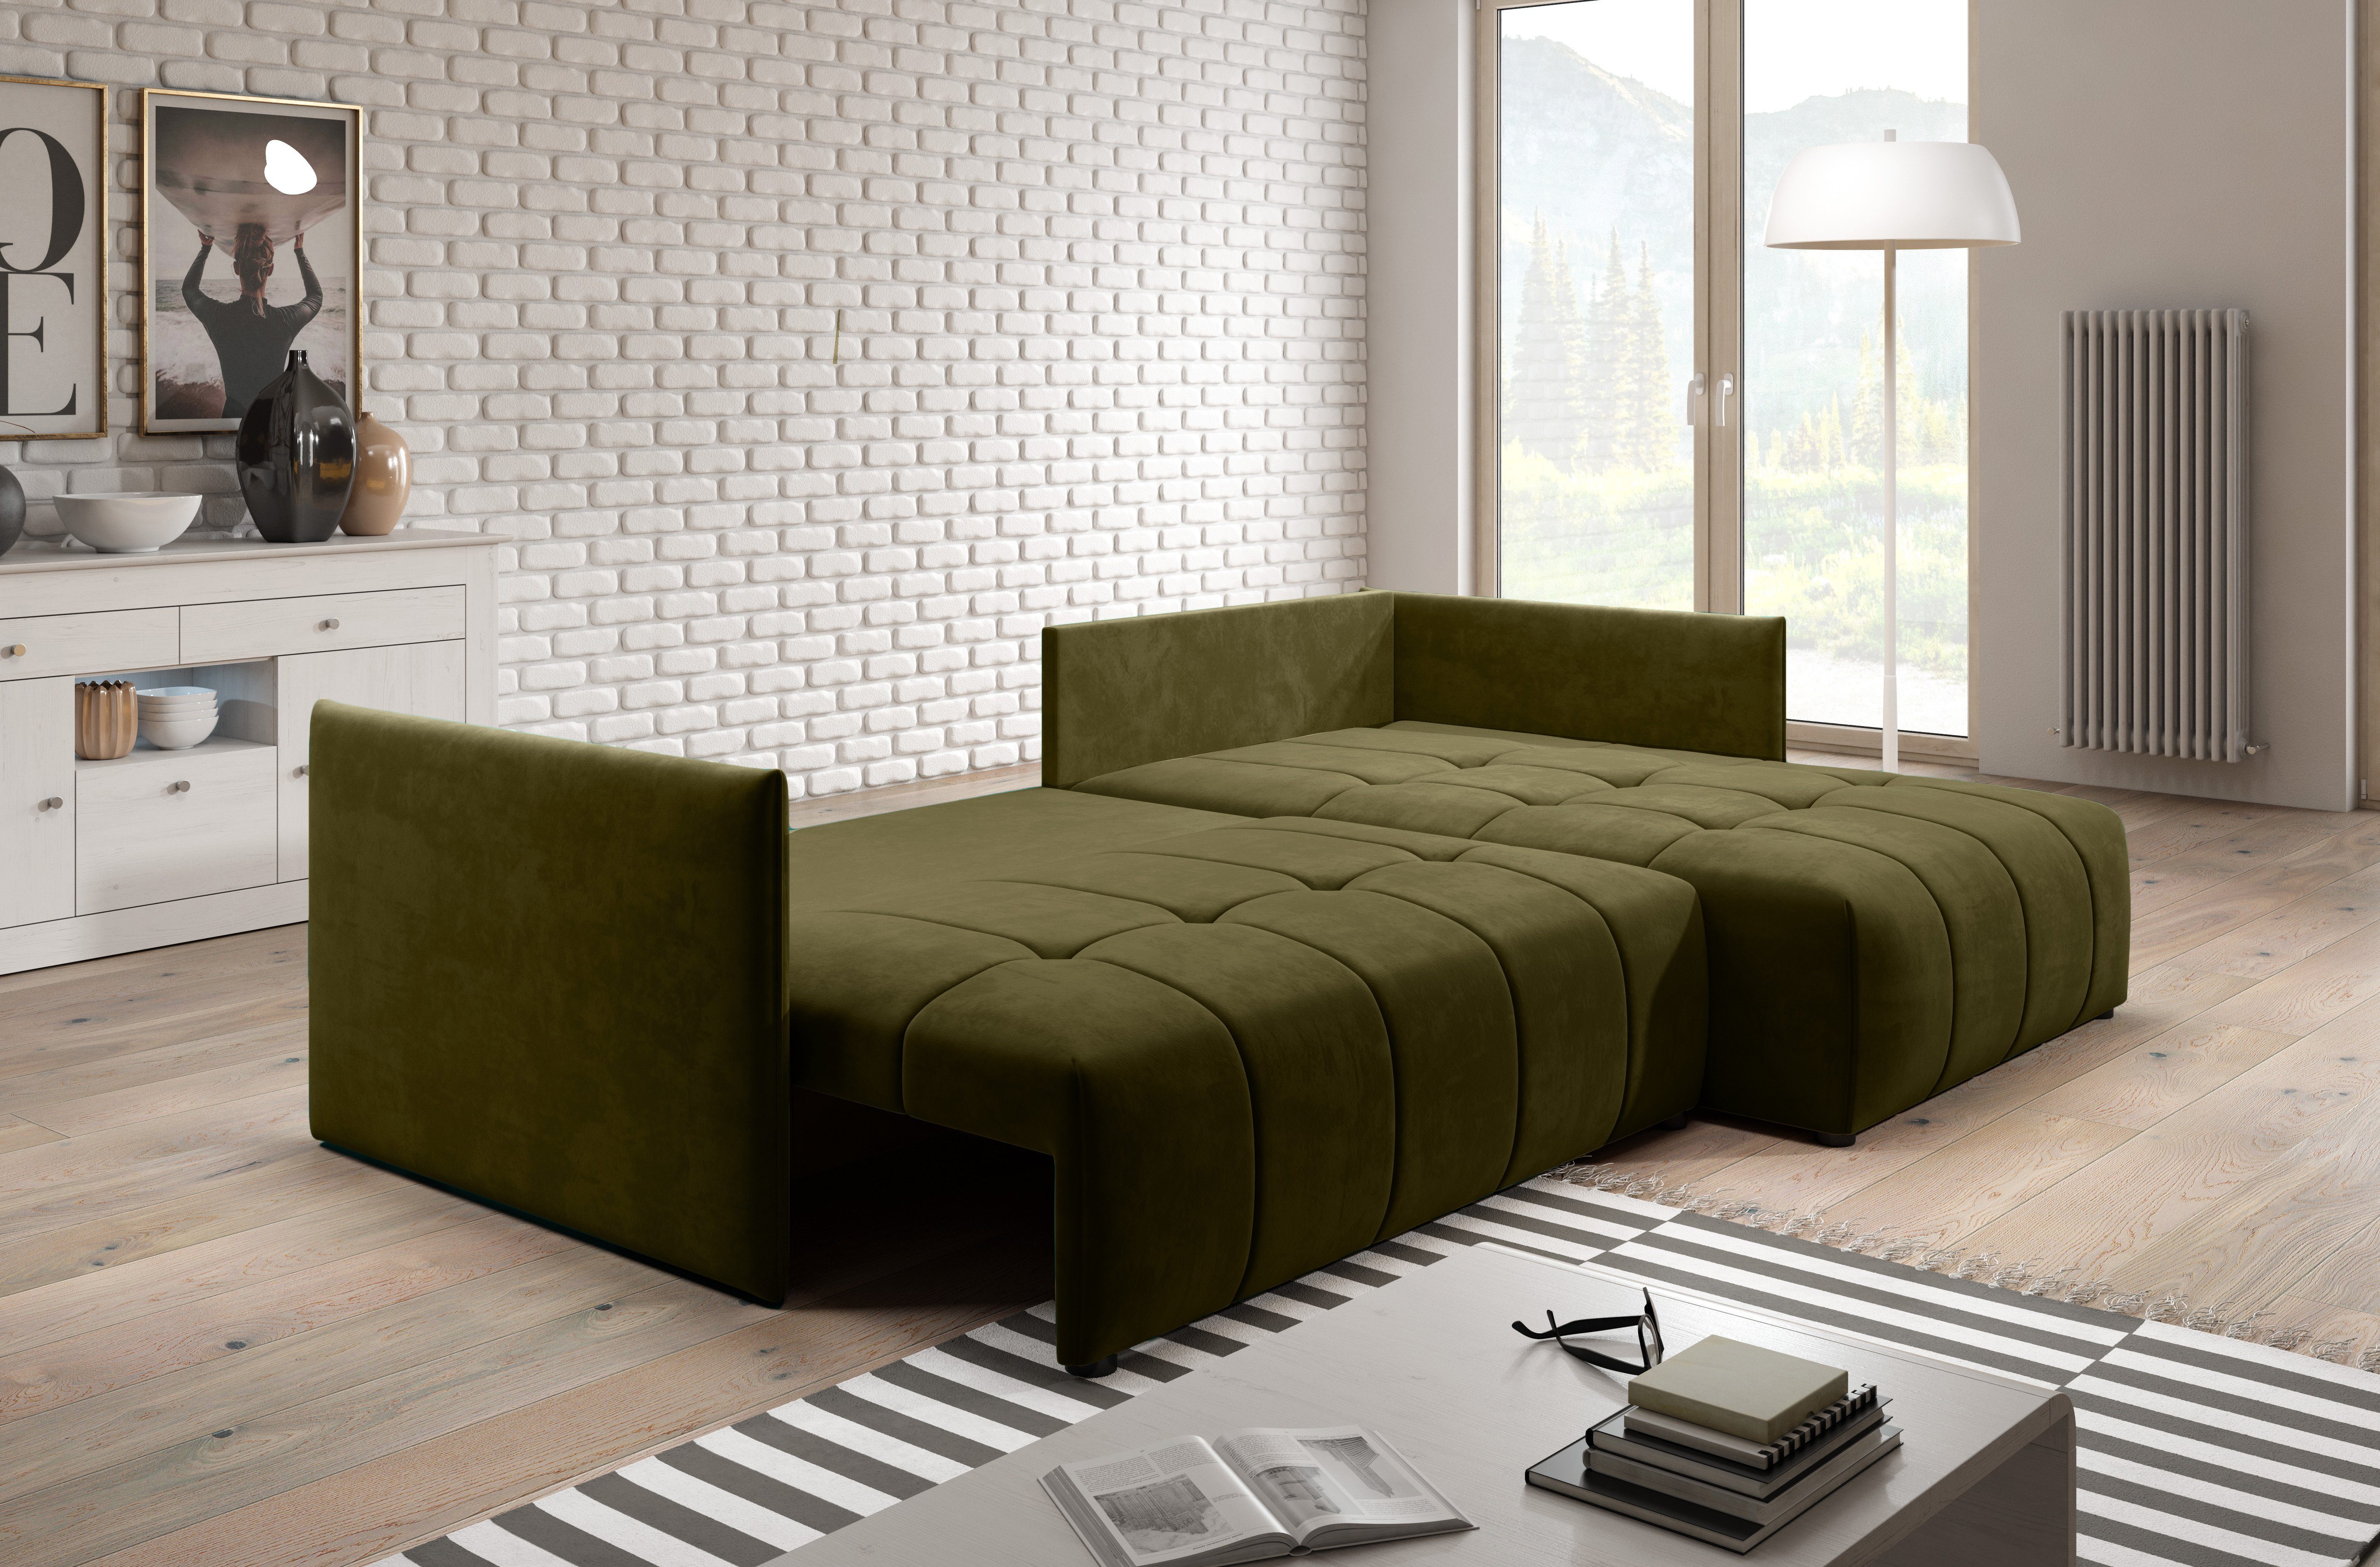 Furnix Ecksofa YALTA MH38 in Europe mit ausziehbar Couch Kissen, Schlafsofa Moos Grün Bettkasten Made und